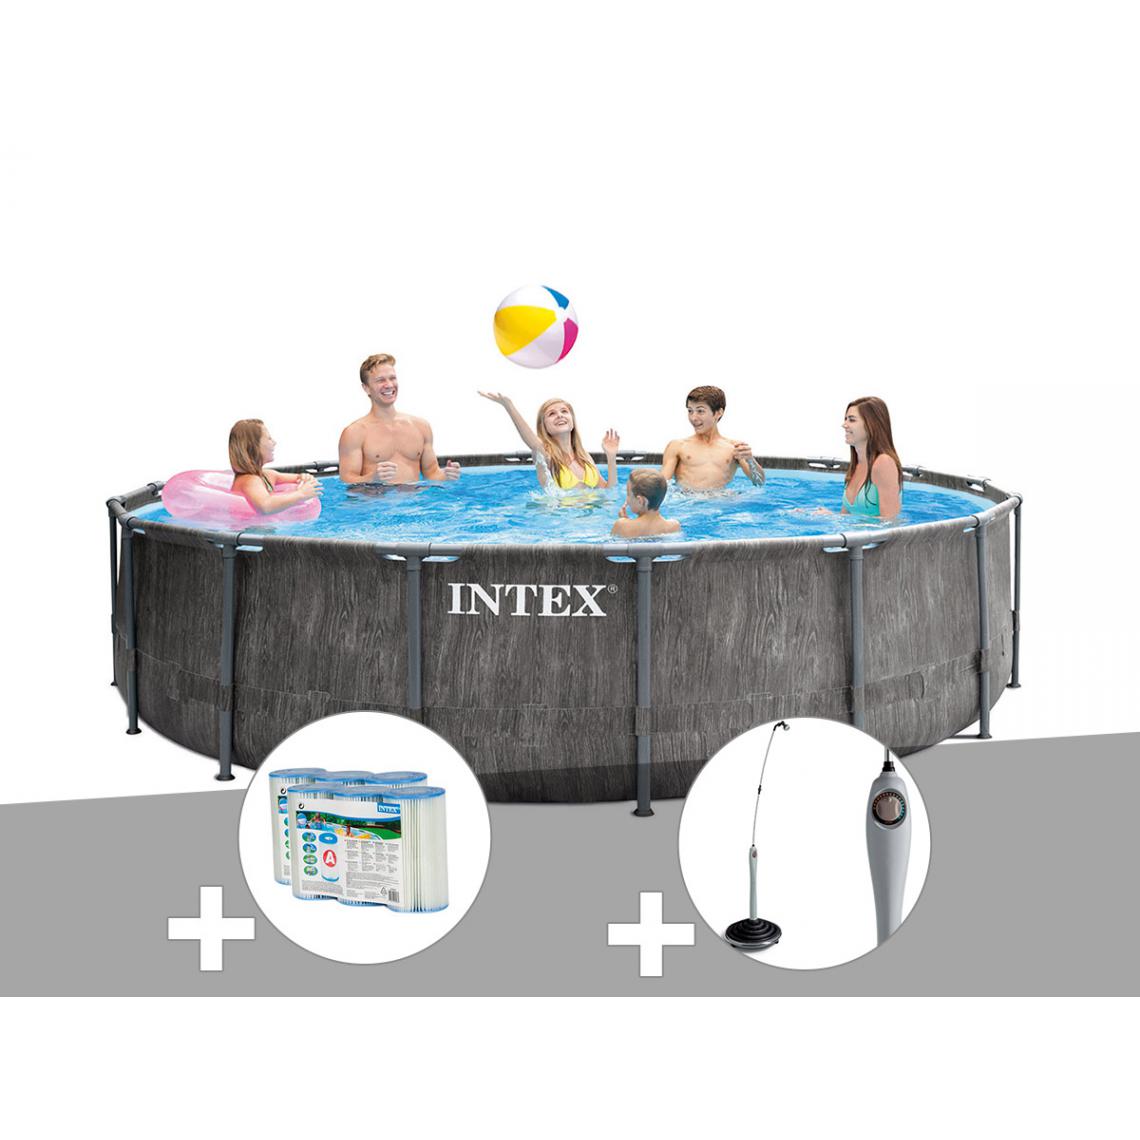 Intex - Kit piscine tubulaire Intex Baltik ronde 4,57 x 1,22 m + 6 cartouches de filtration + Douche solaire - Piscine Tubulaire